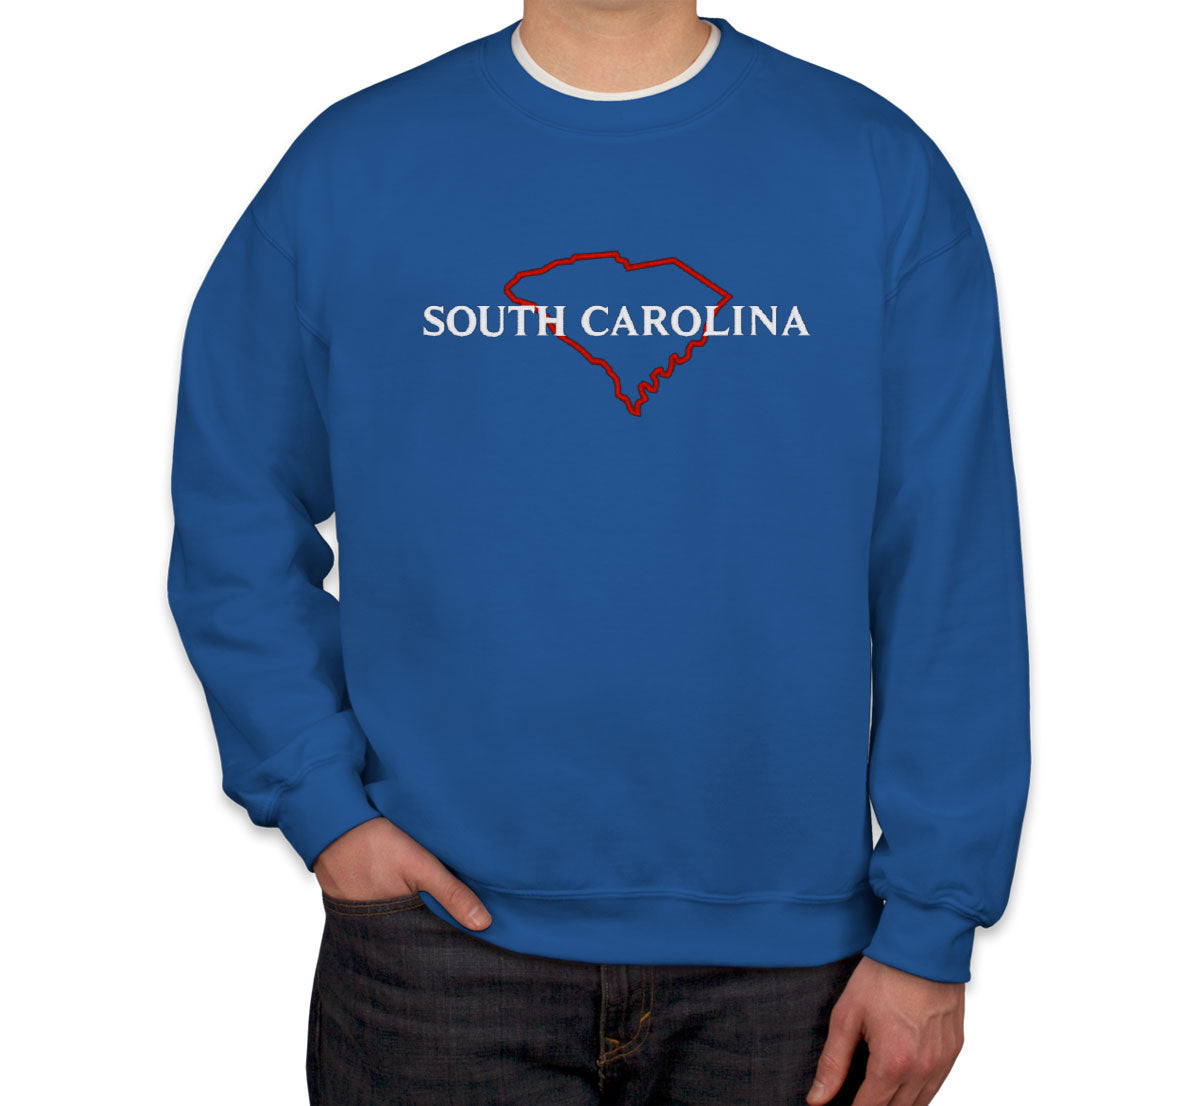 South Carolina Embroidered Unisex Sweatshirt